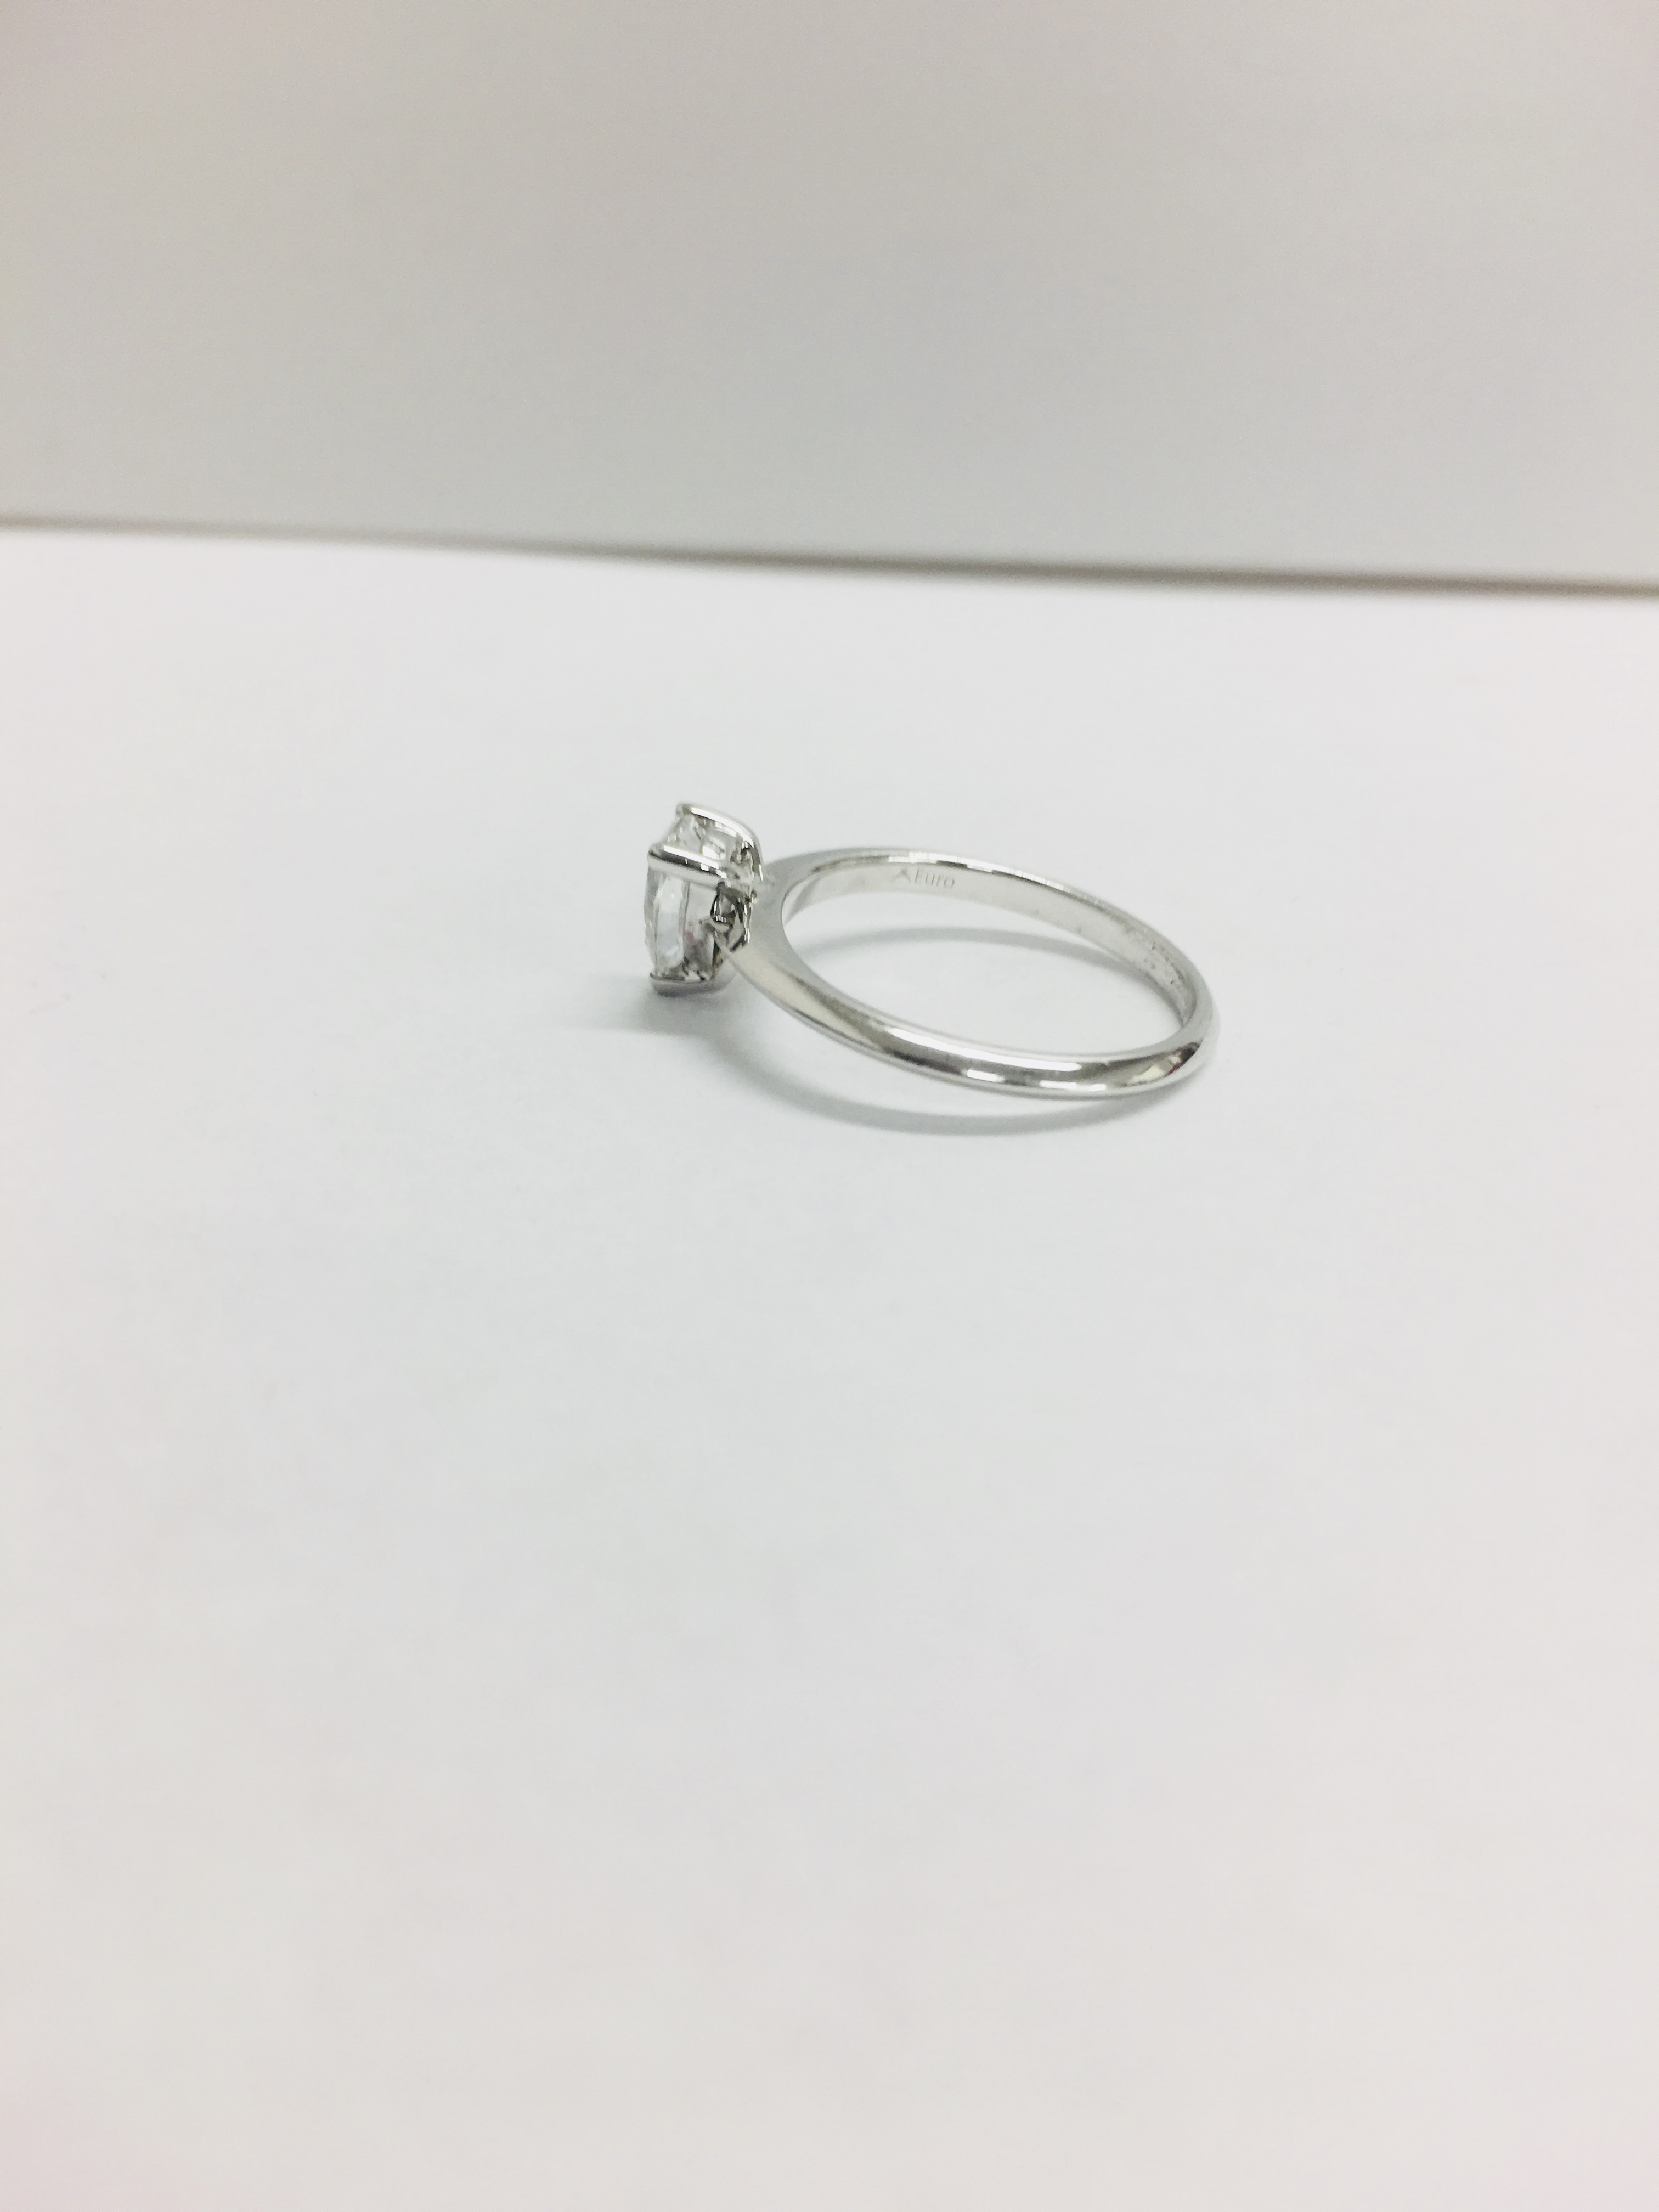 0.45Ct Diamond Solitaire Ring Set In Platinum 950. - Image 2 of 5